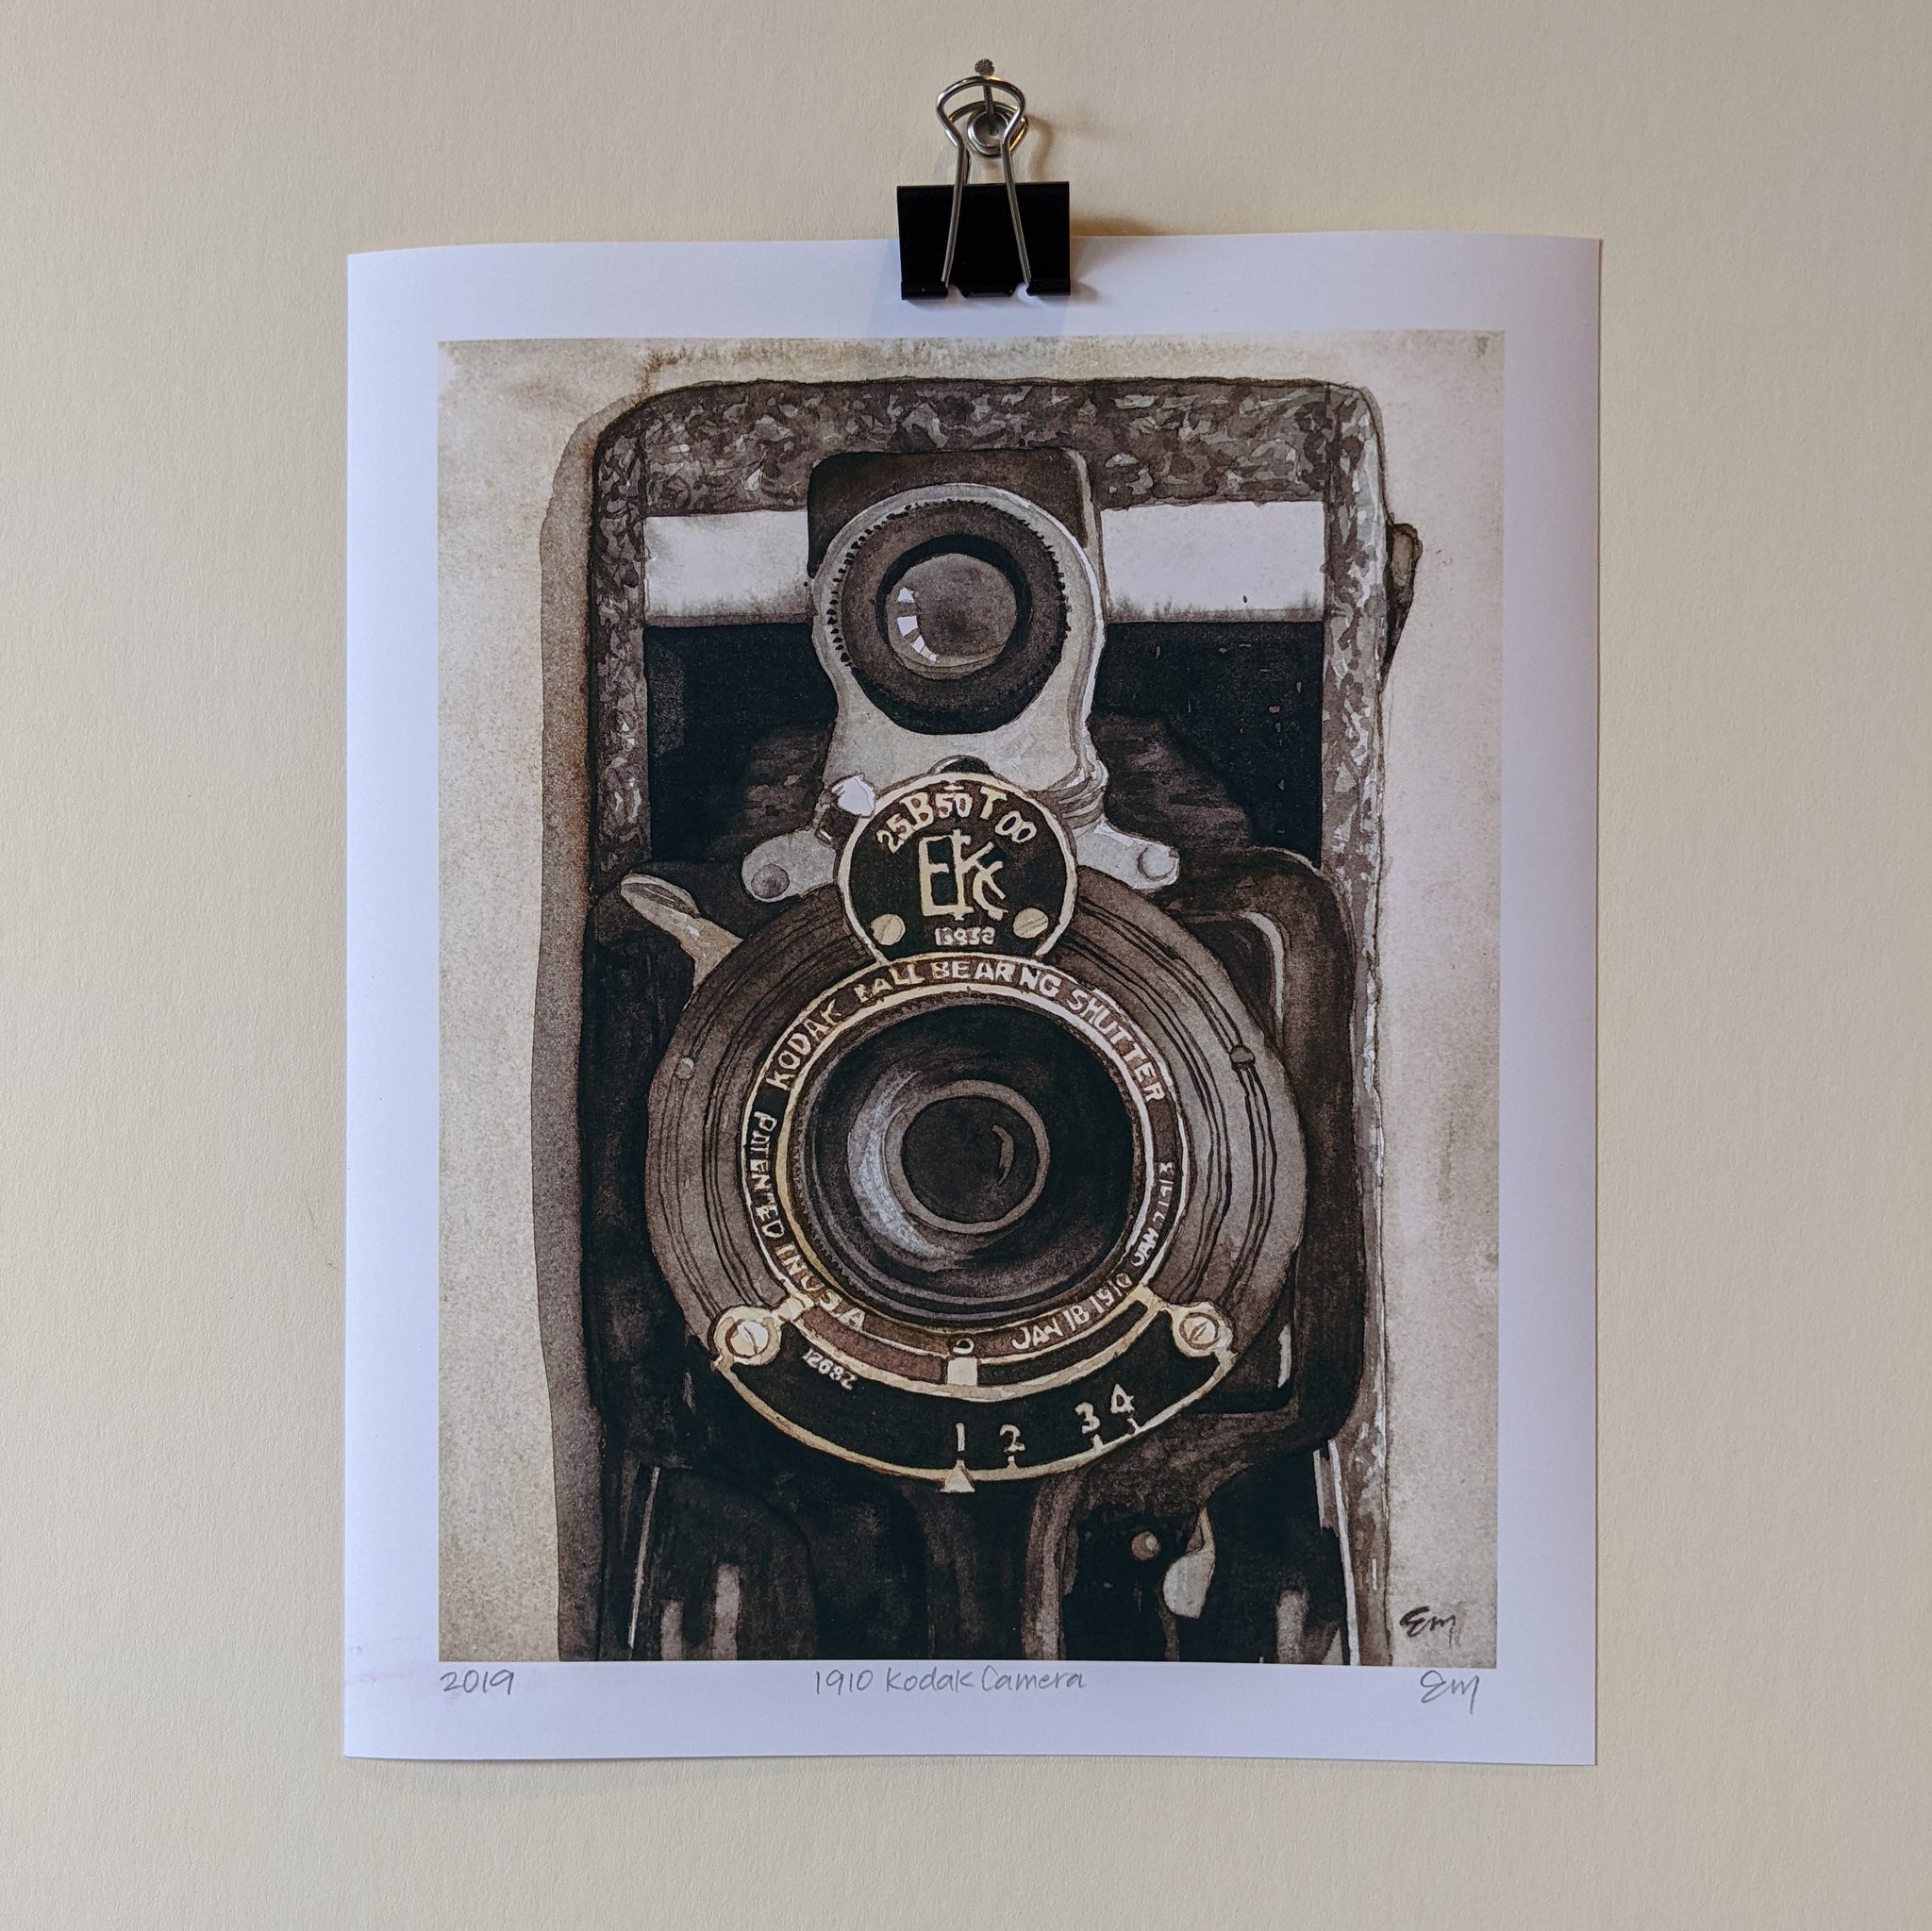 1910 Kodak Camera, 2019